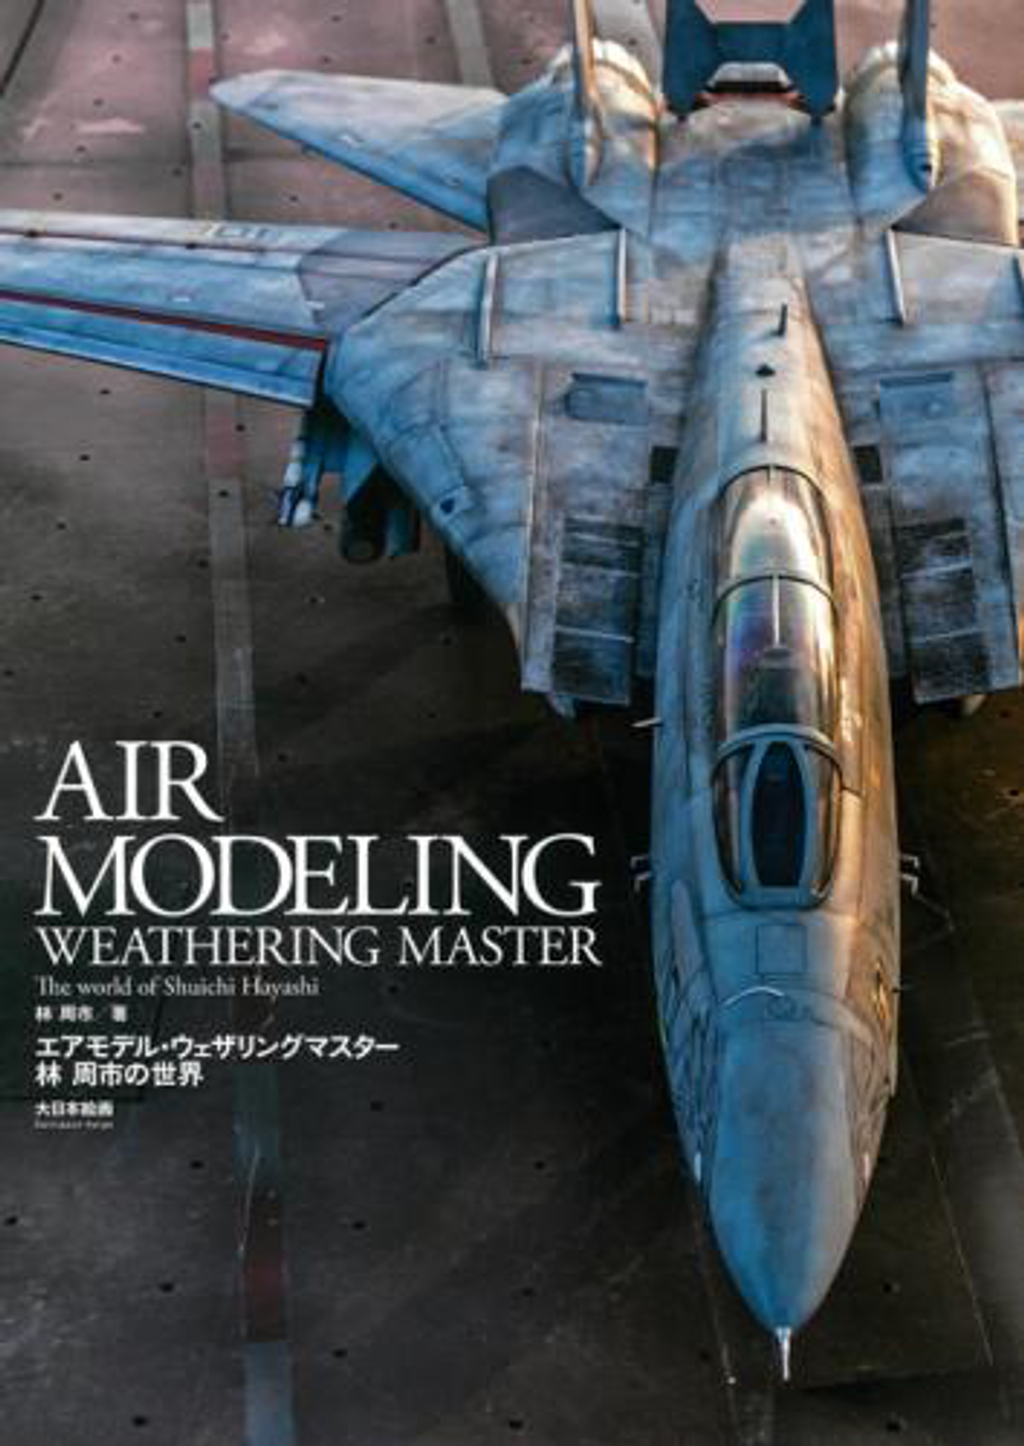 MDG23239 air modeling weathering master - shuichi hayashi's world